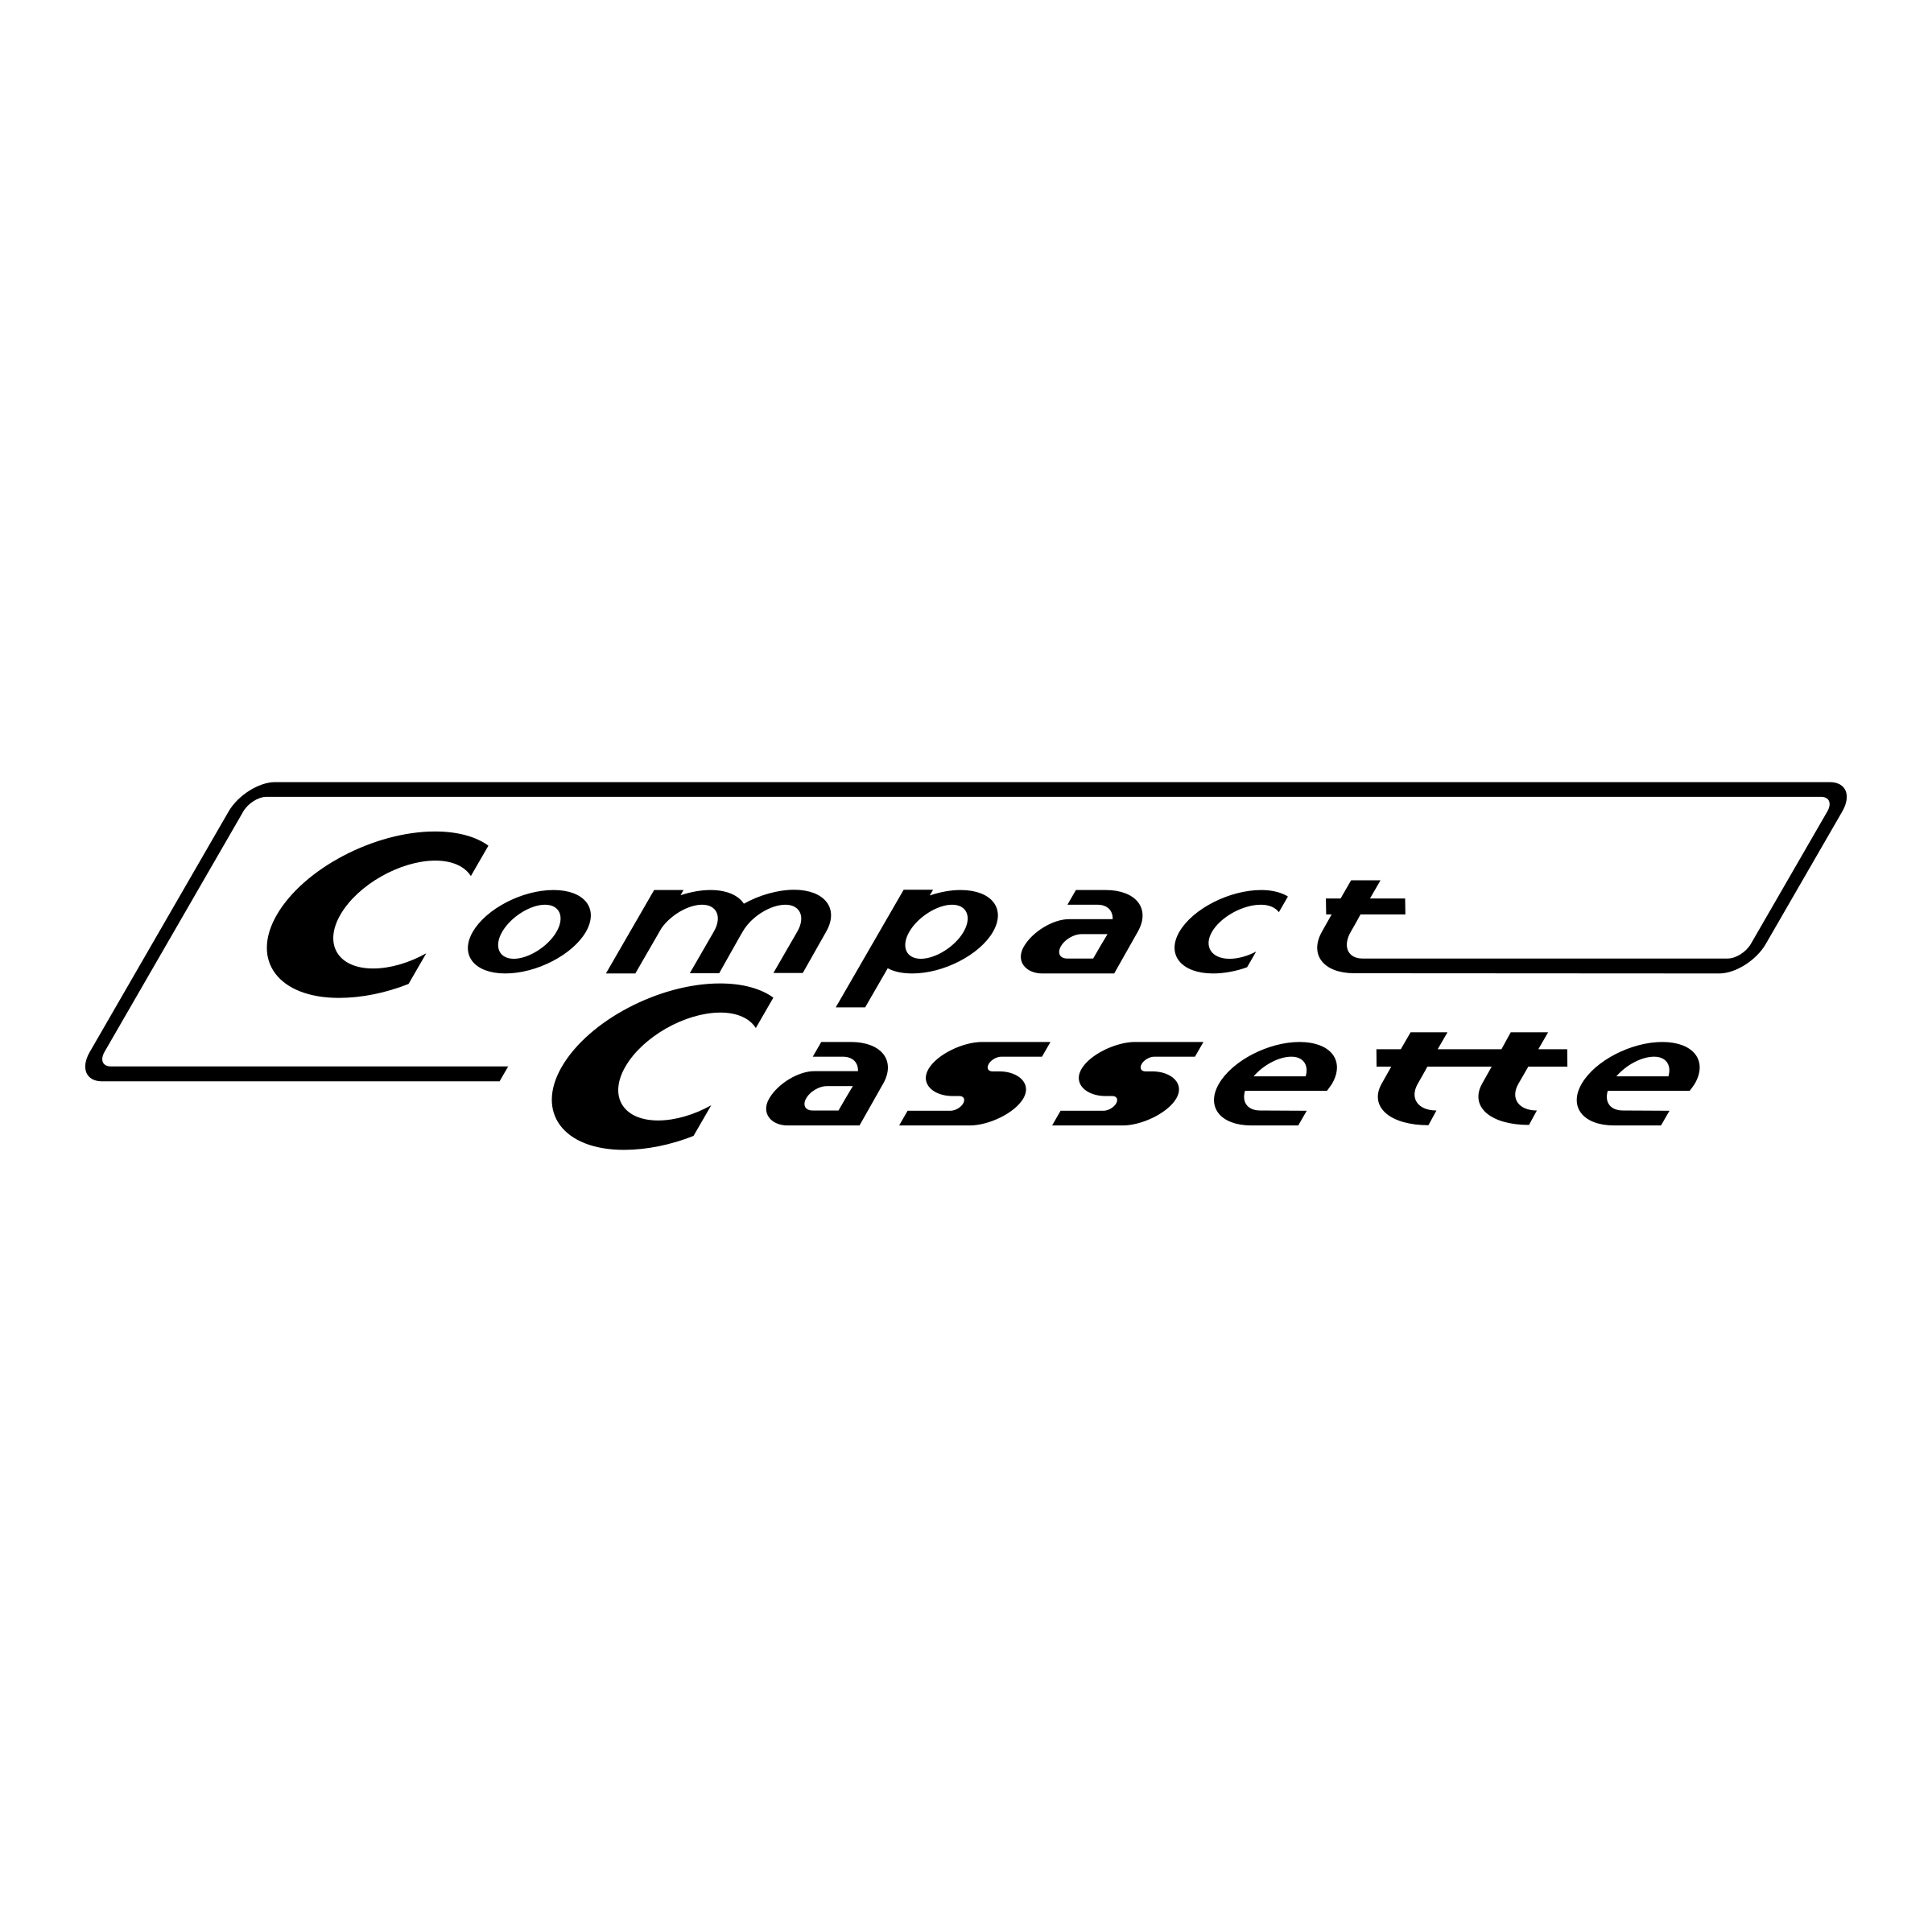 Cassette Logo - Compact Cassette Logo PNG Transparent & SVG Vector